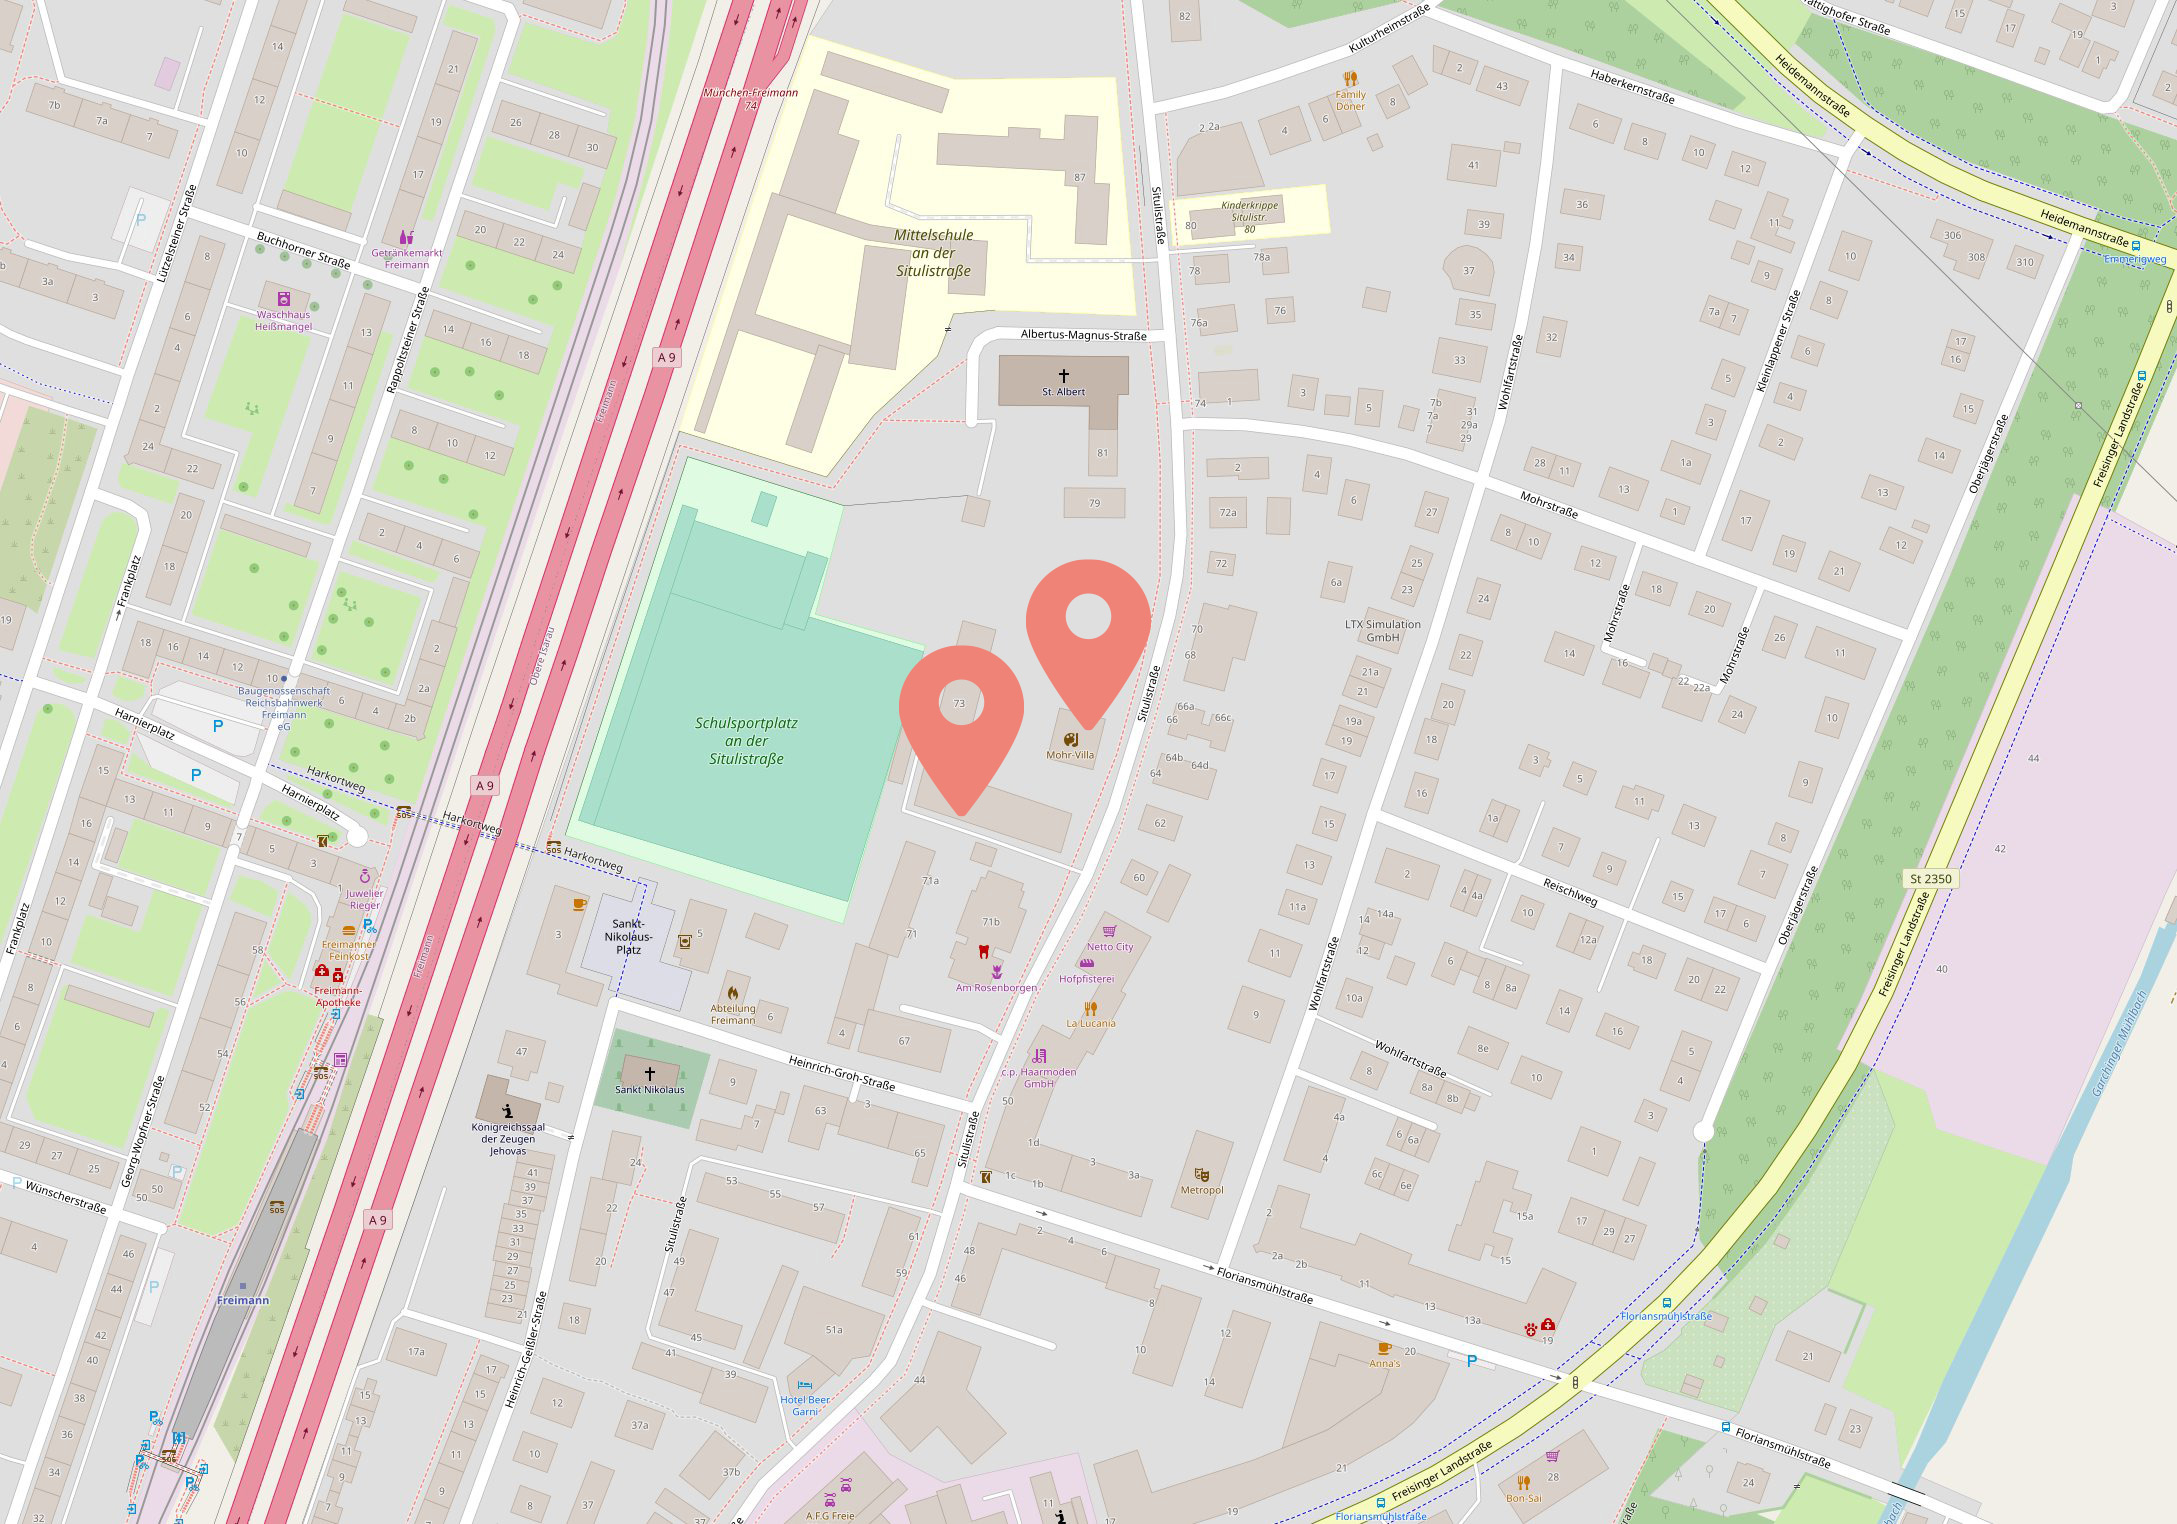 Karte Open Street Map mit Lage der Mohr-Villa sowie Nebengebäude der, Situlistraße 73-75